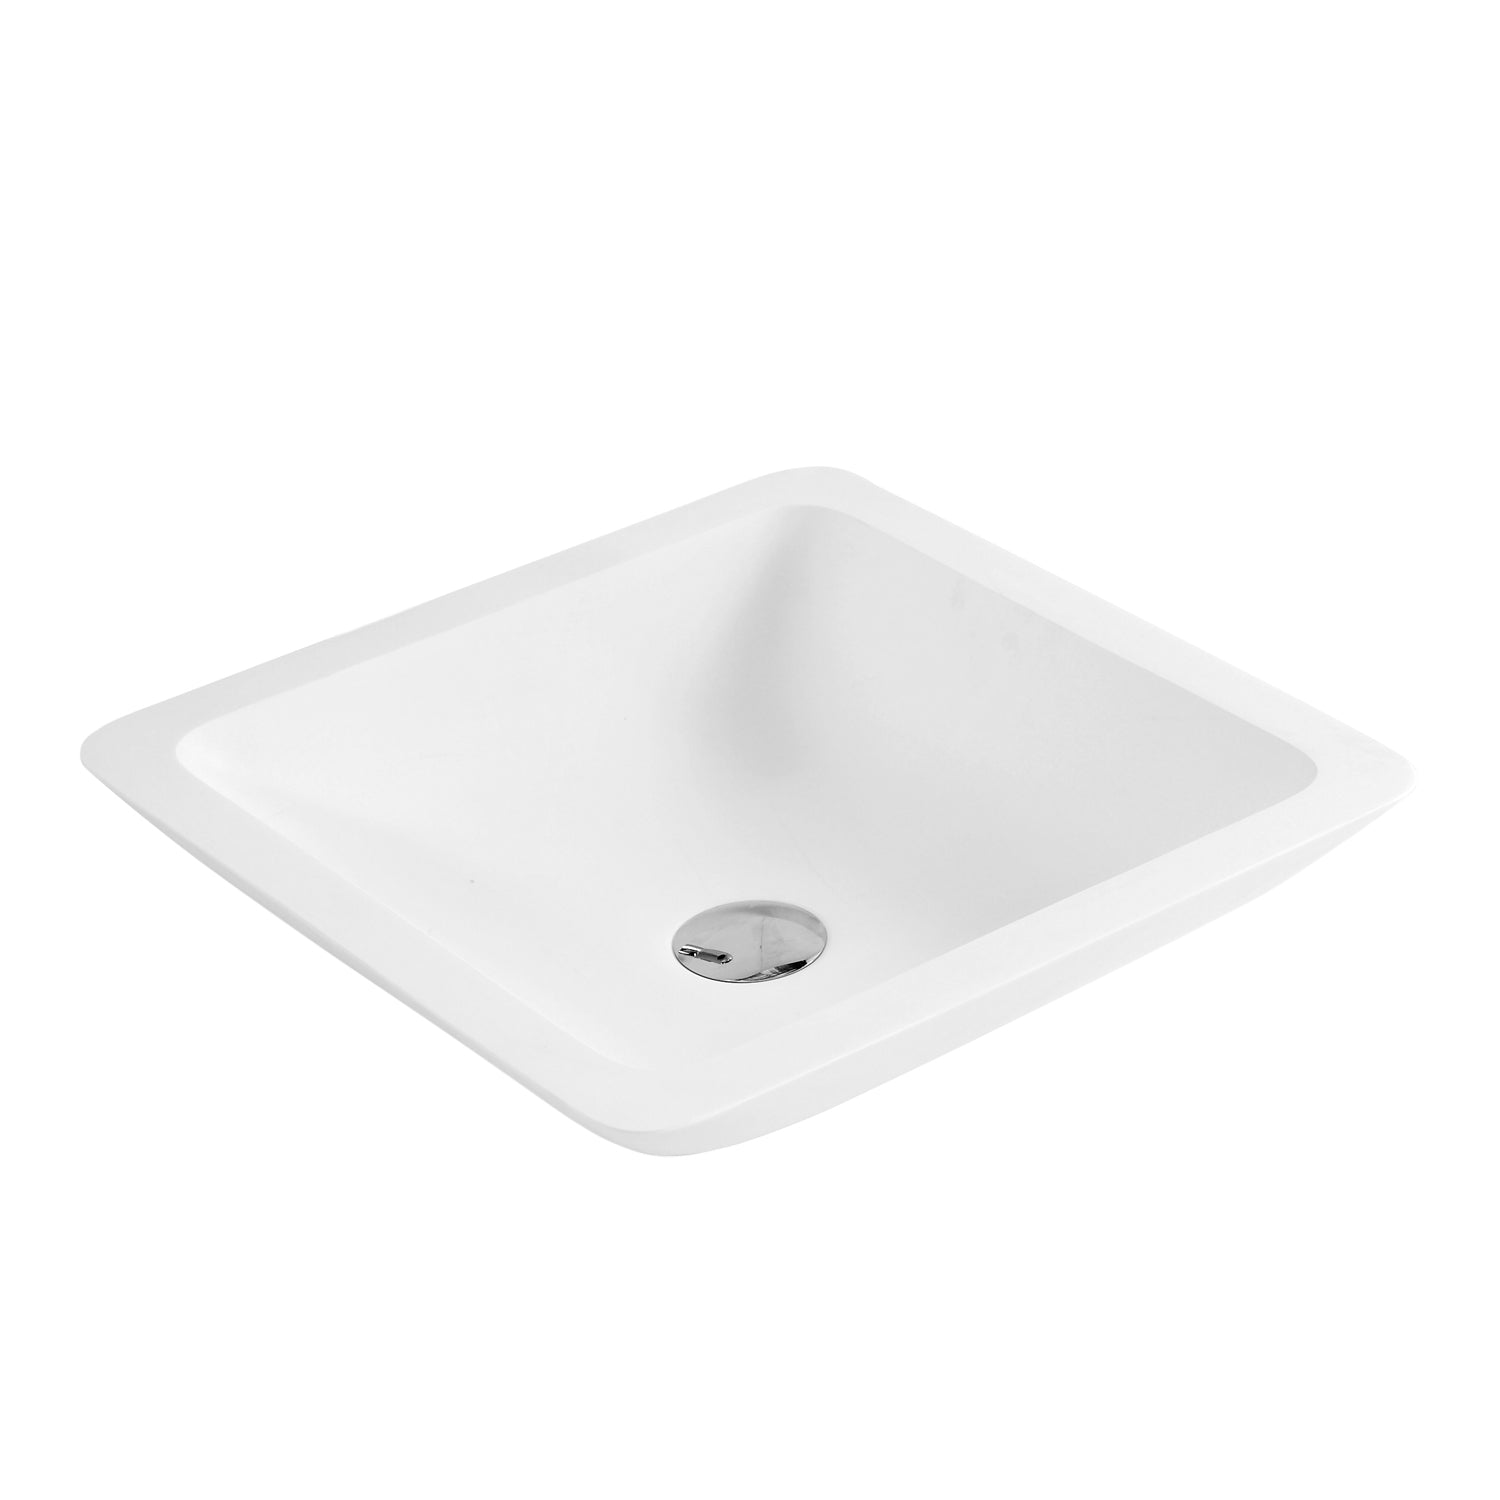 DAX Lavabo cuadrado de superficie sólida para baño de un solo tazón, acabado blanco mate, 16-1/2 x 16-1/2 x 4 pulgadas (DAX-AB-1320)